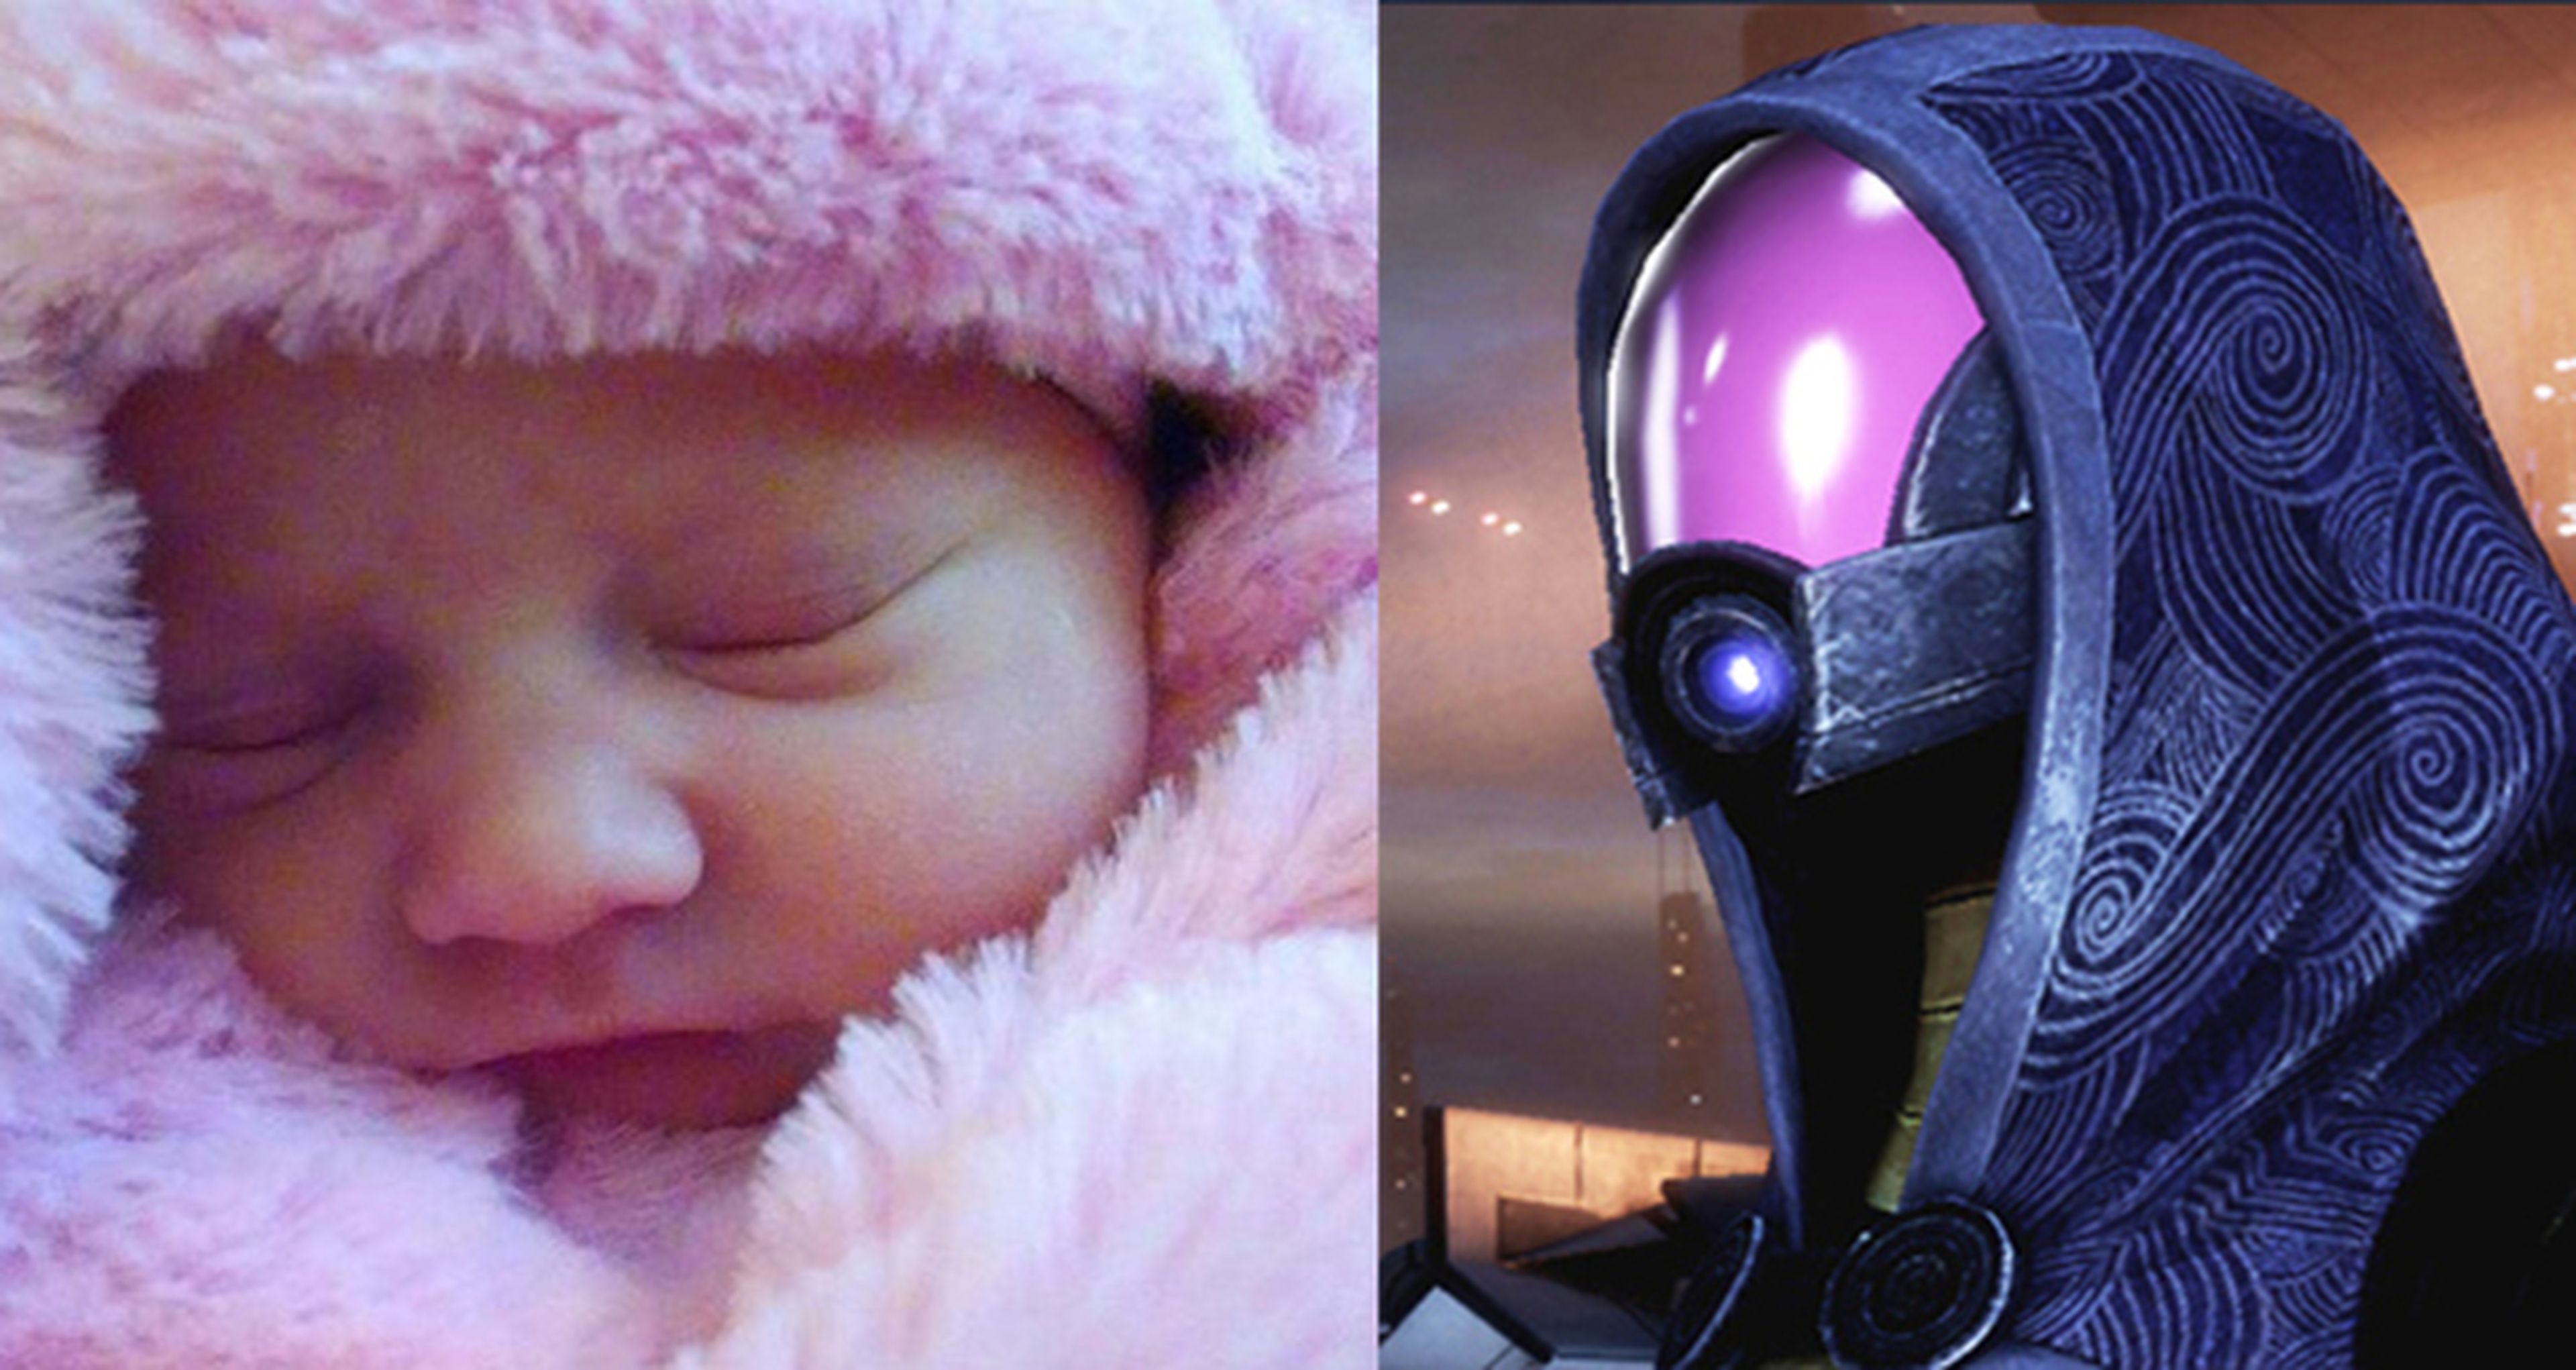 Llaman a su hija como un personaje de Mass Effect